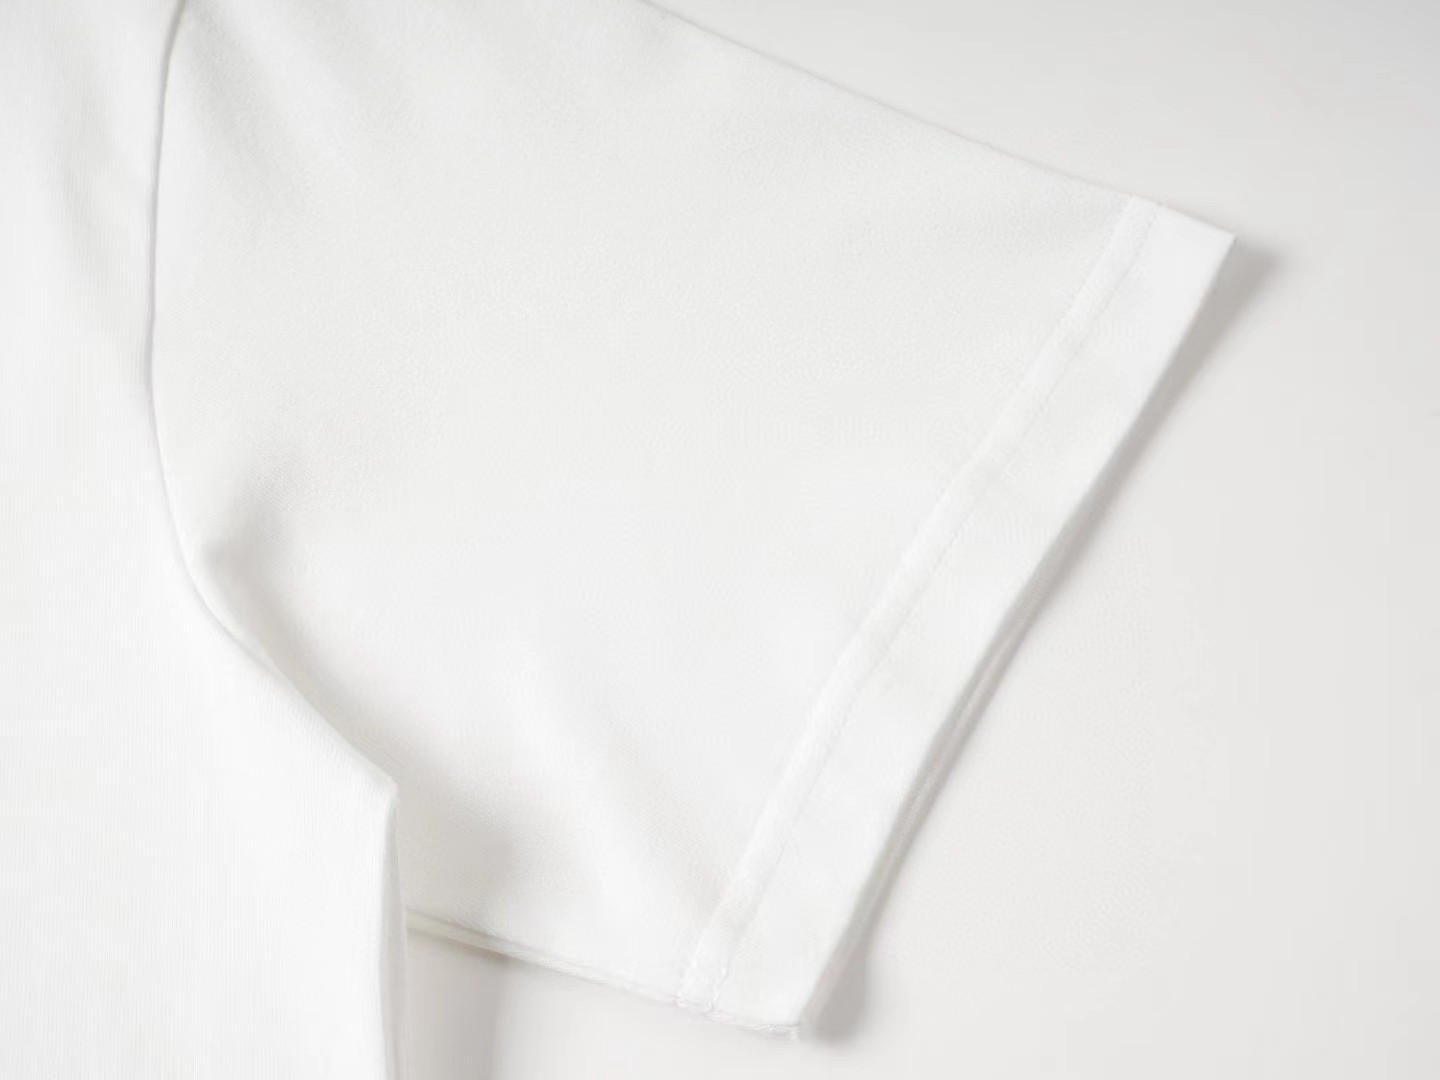 Show新推荐这款轻质棉质针织衫的简易T恤印有该系列的1v新年年系列这件图形作品以龙的元素彩色印花创意能